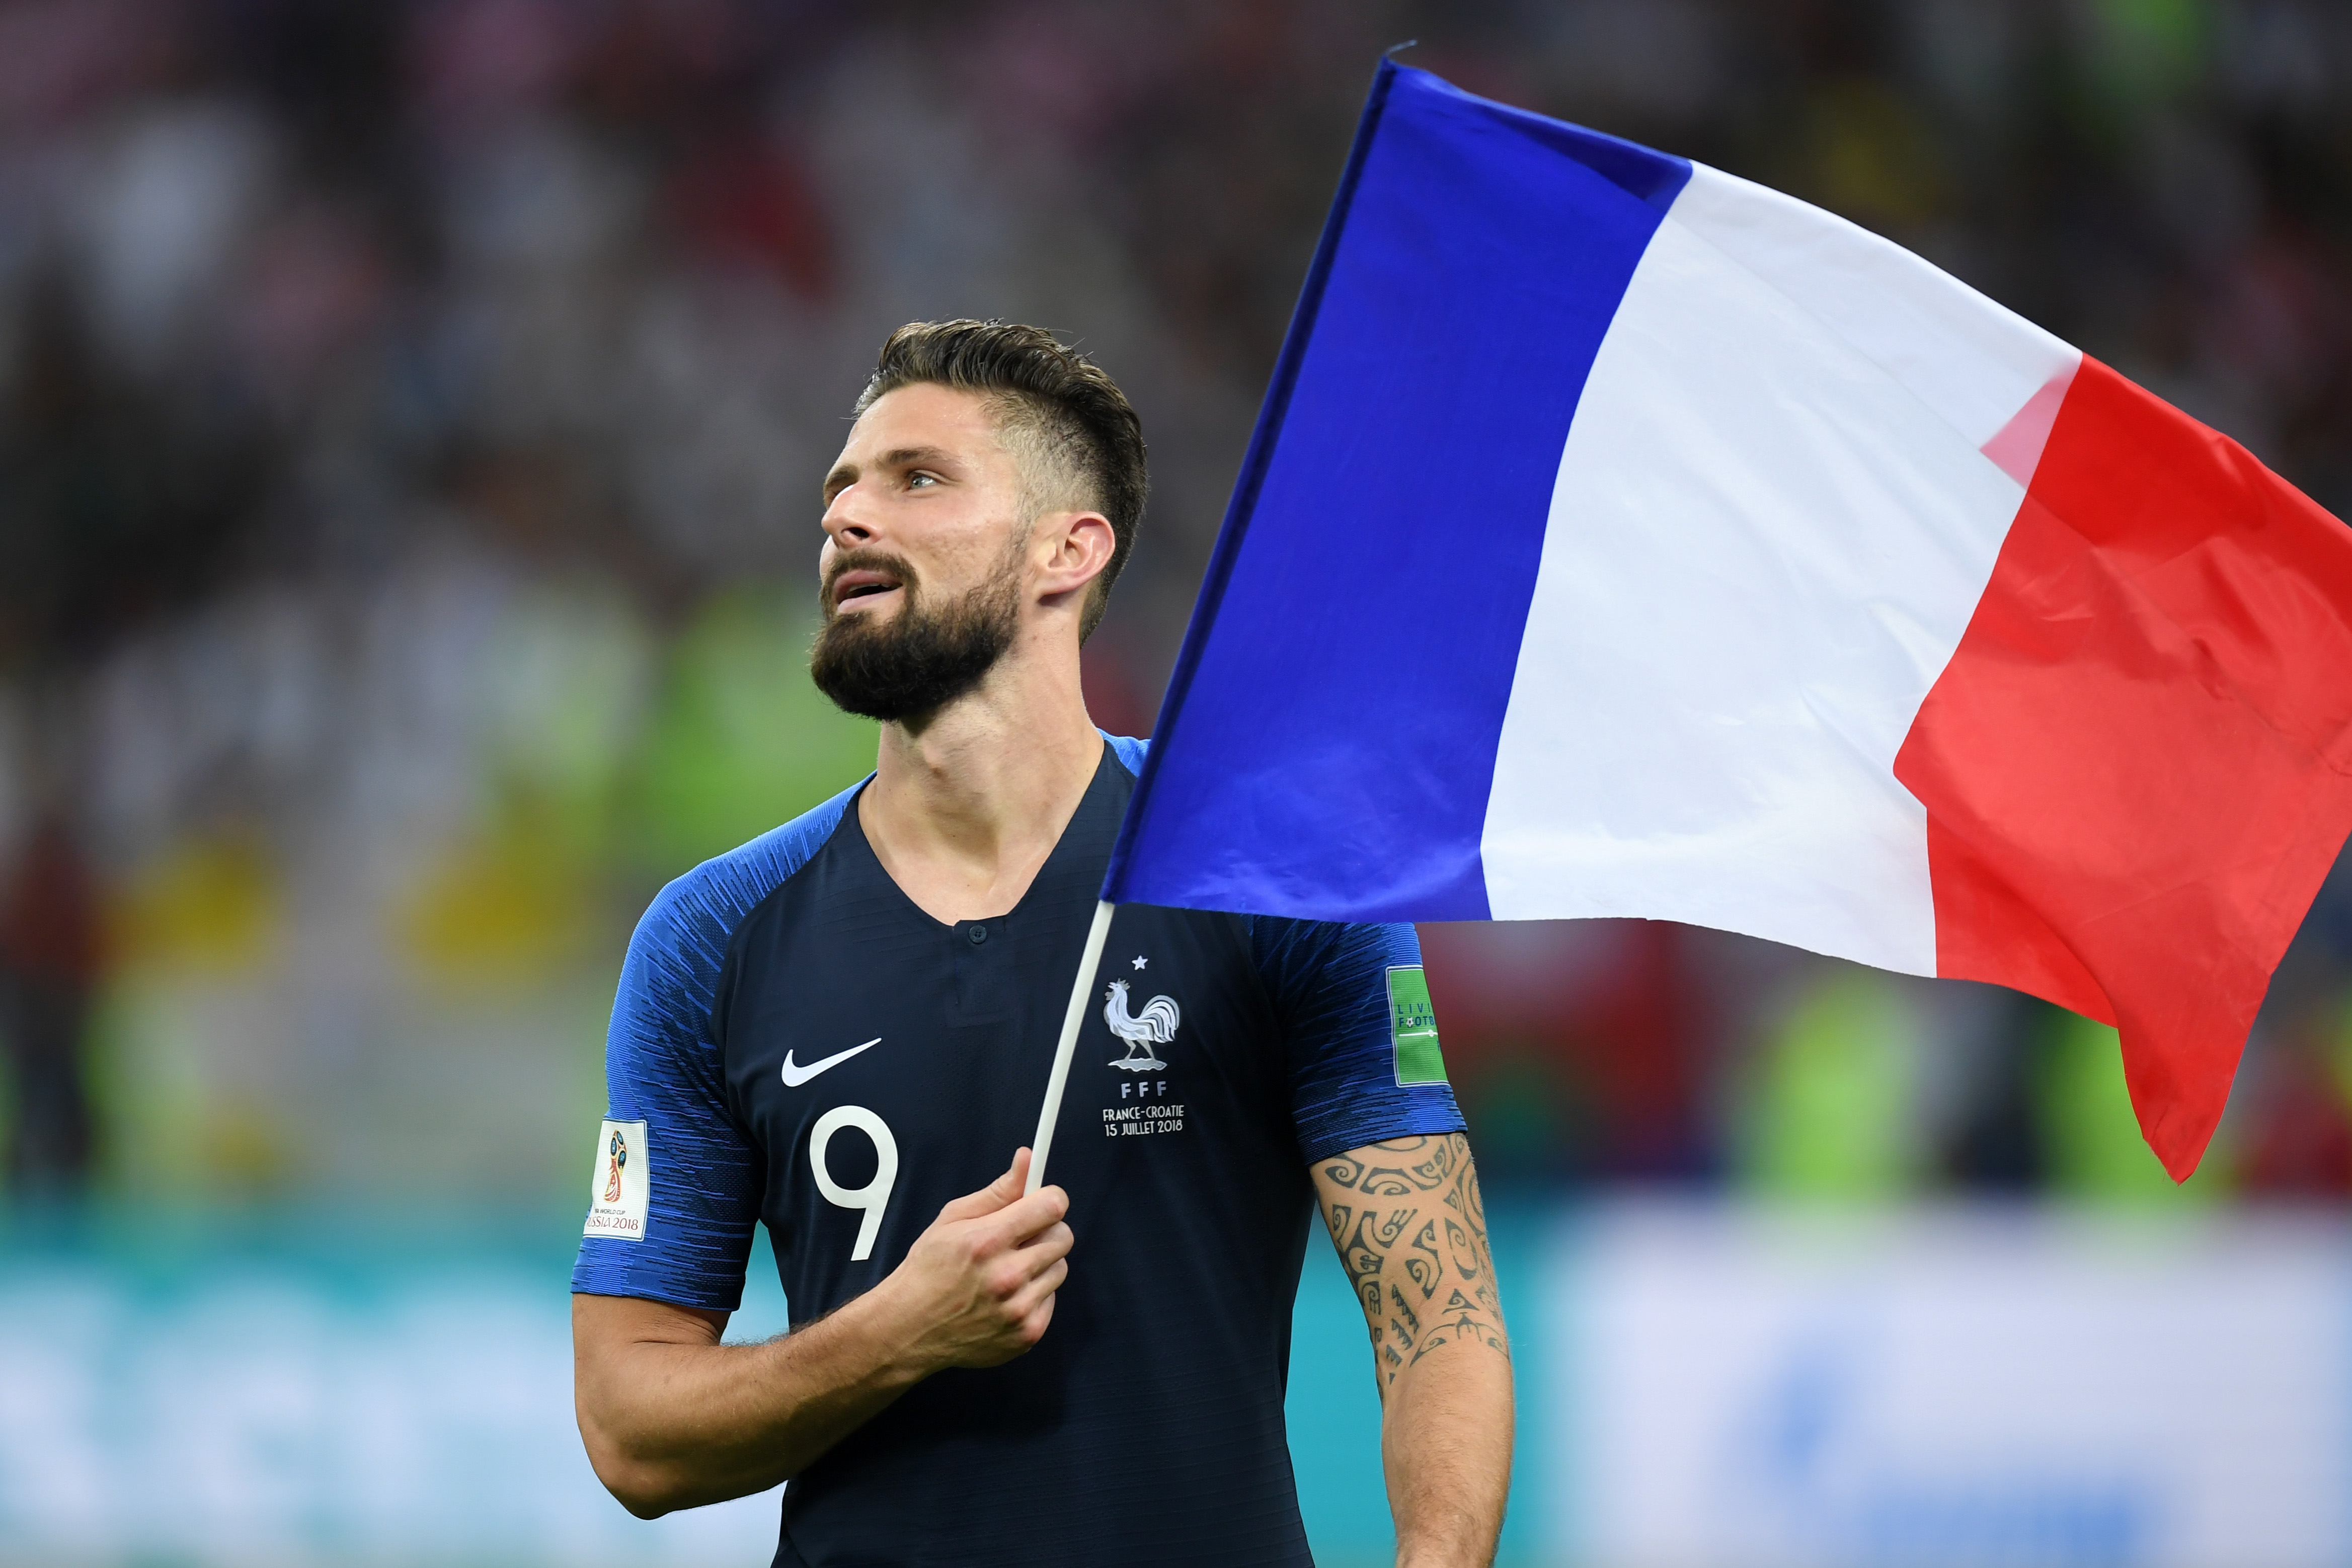 شاهد .. NEW LOOK غريب من مهاجم منتخب فرنسا بعد الفوز بـ مونديال 2018